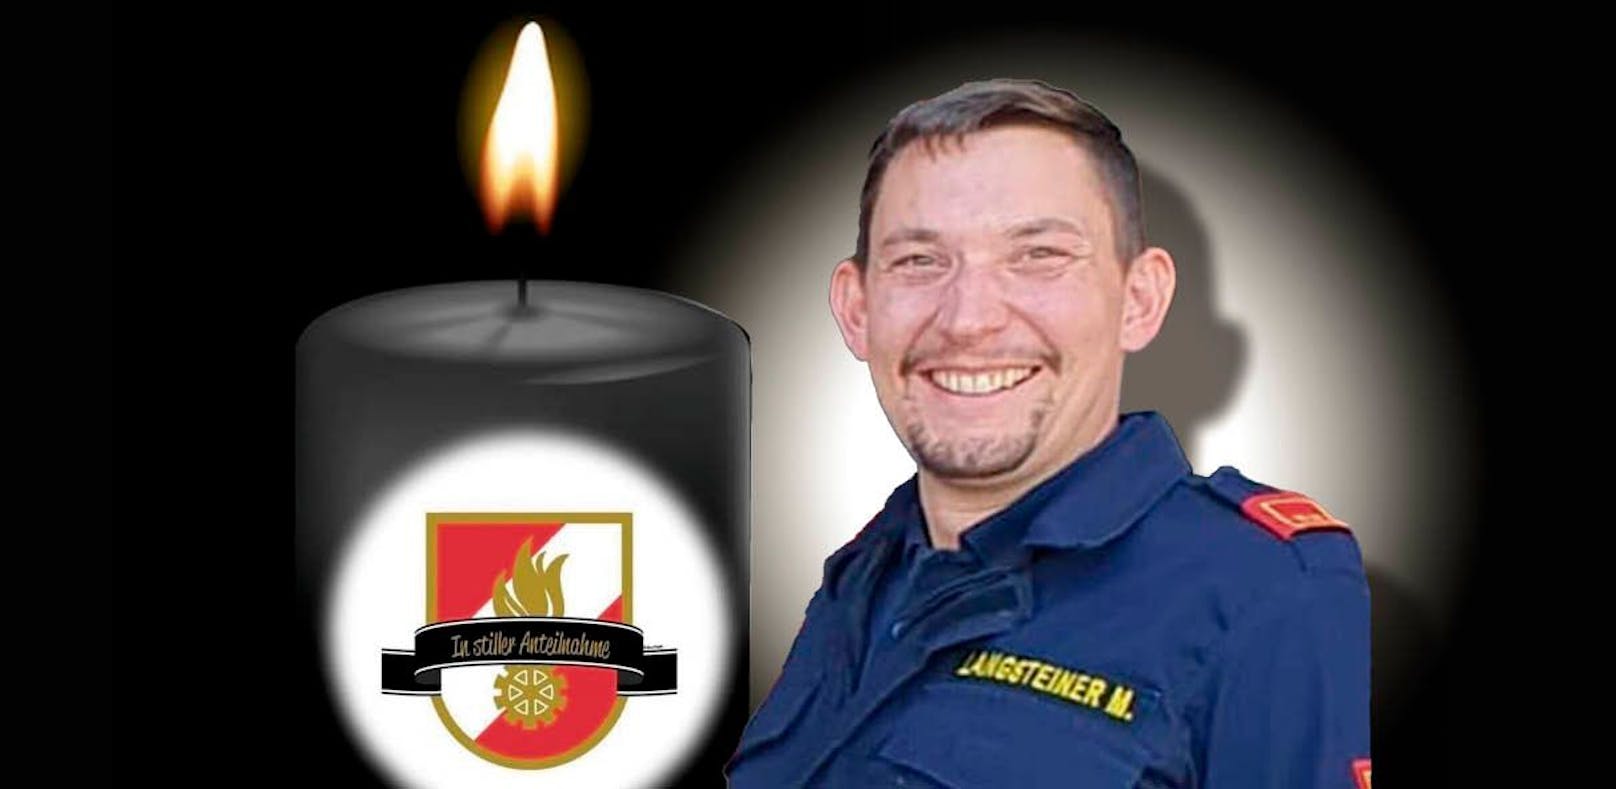 Trauer um Feuerwehr-Chef! Floriani wurde nur 33 Jahre